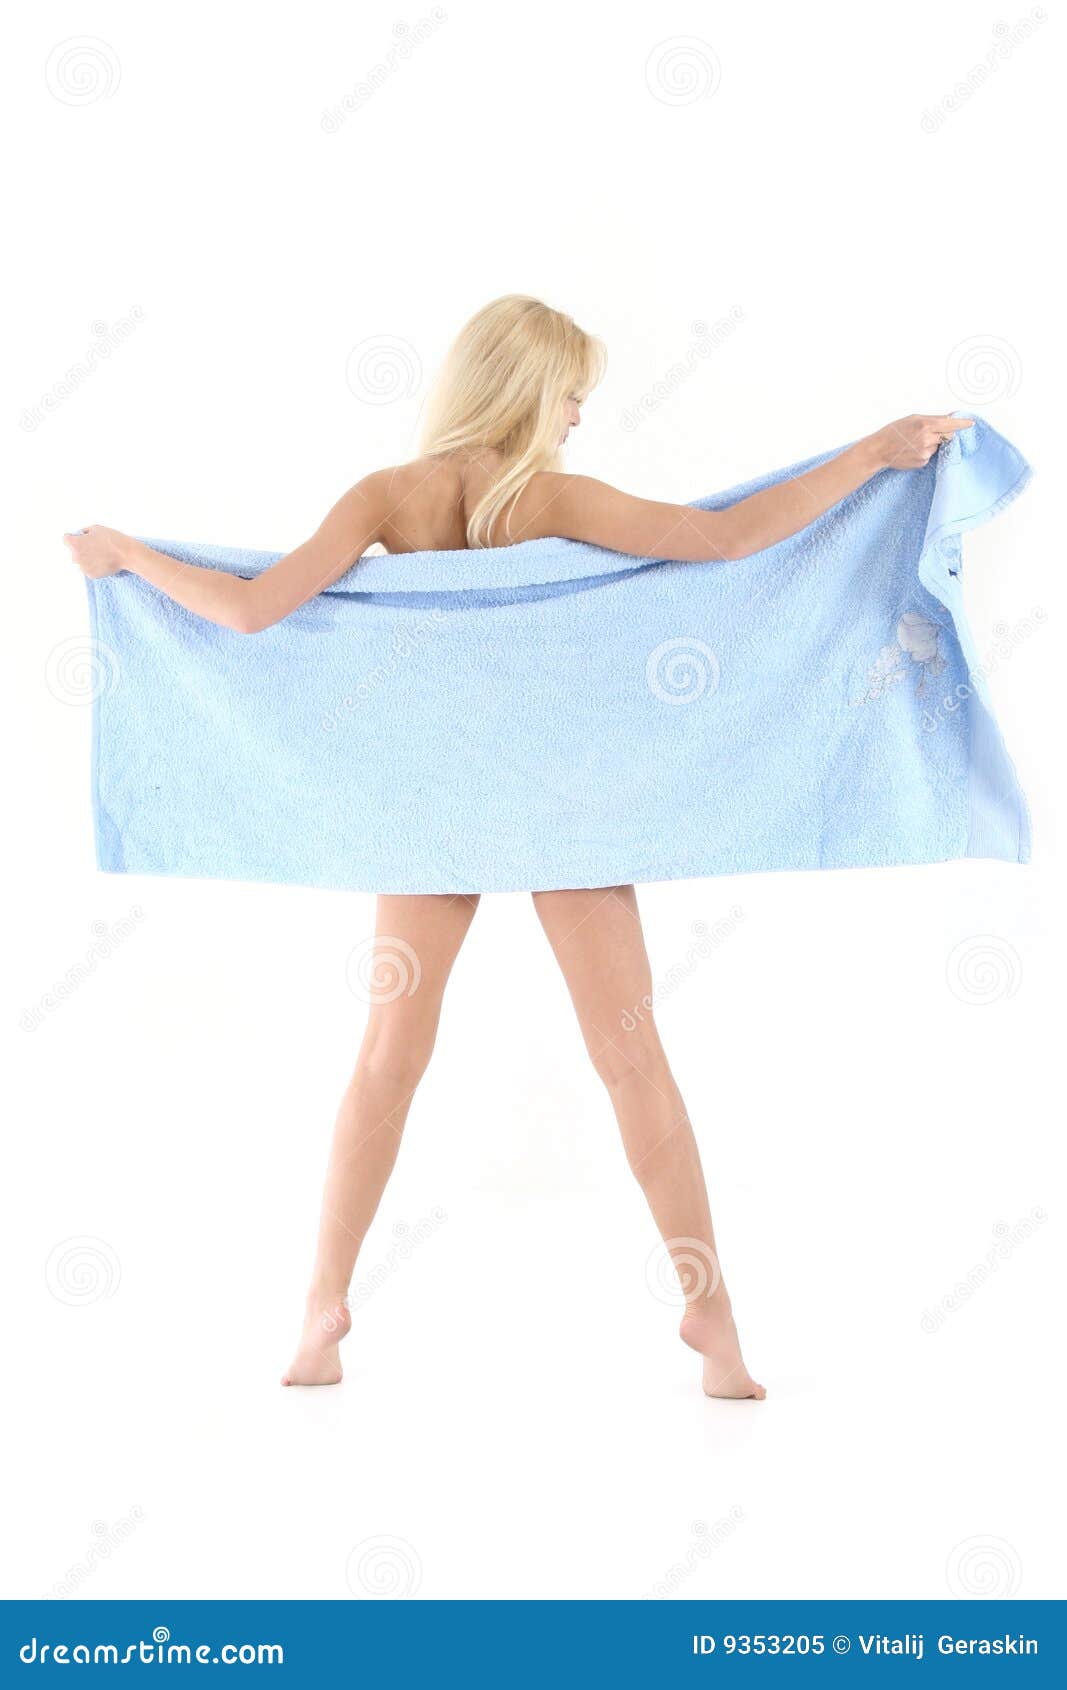 Стянули полотенце